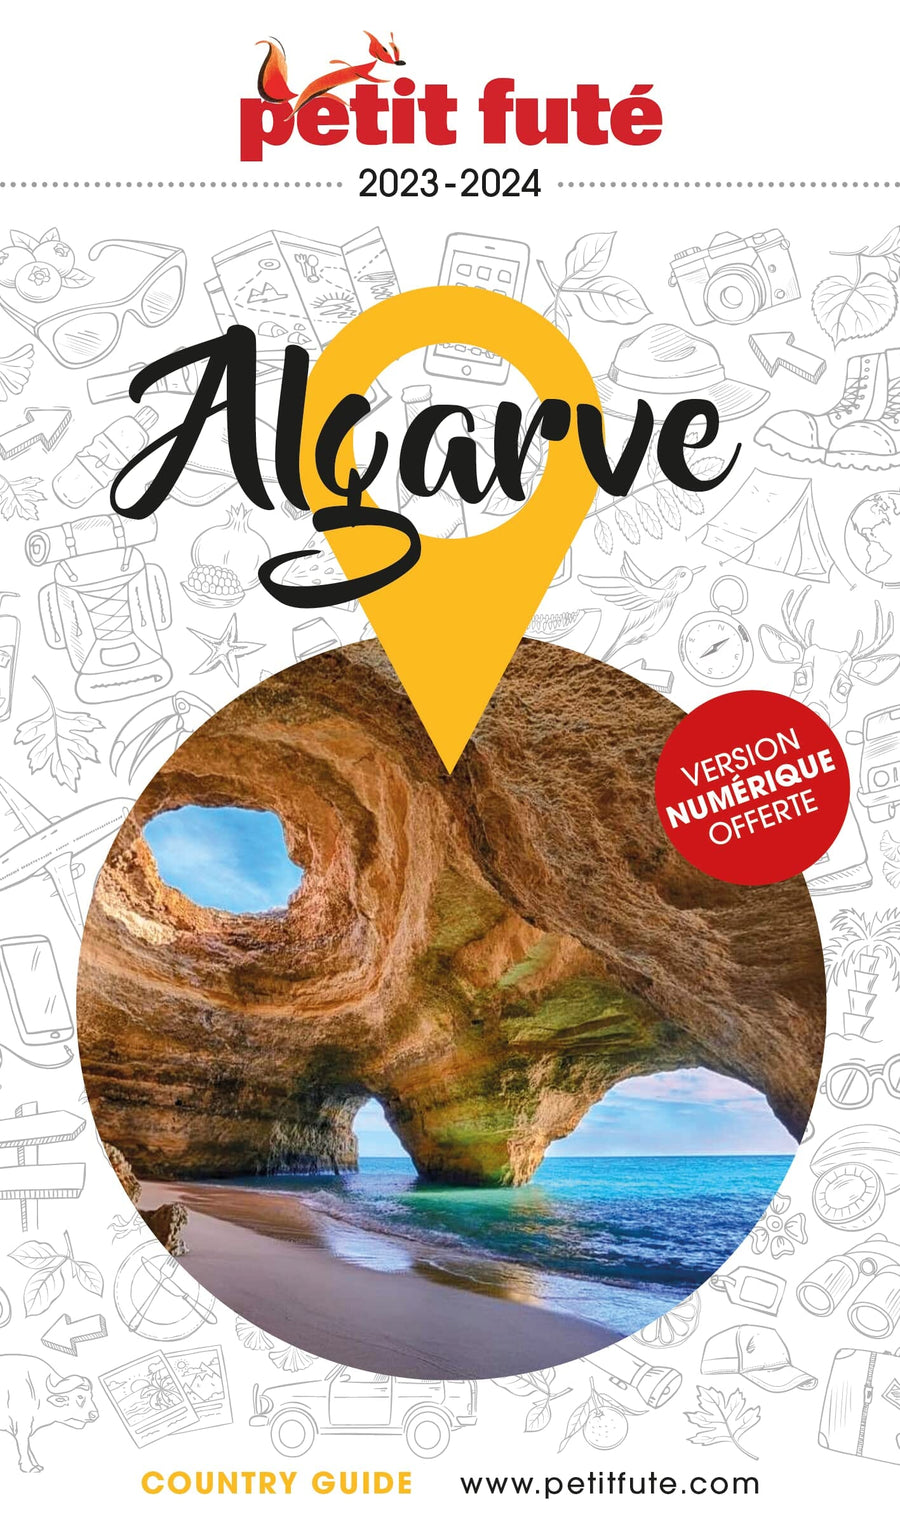 Guide de voyage - Algarve 2023/24 | Petit Futé guide de voyage Petit Futé 